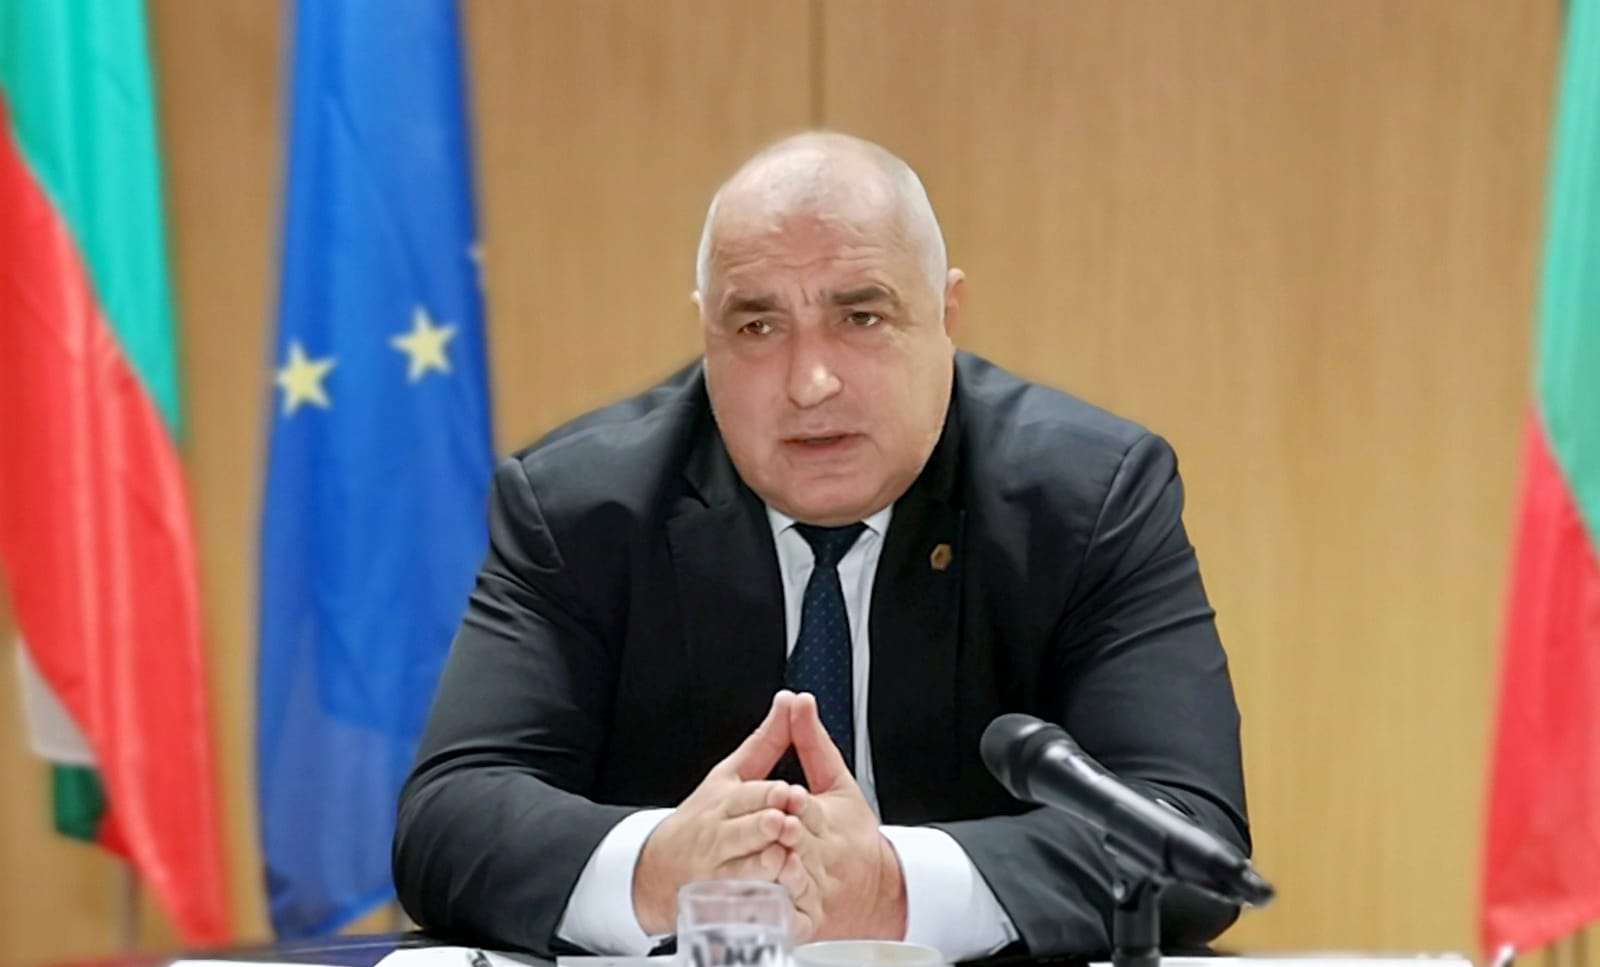 Борисов прогнозира излизане от кризата след август догодина